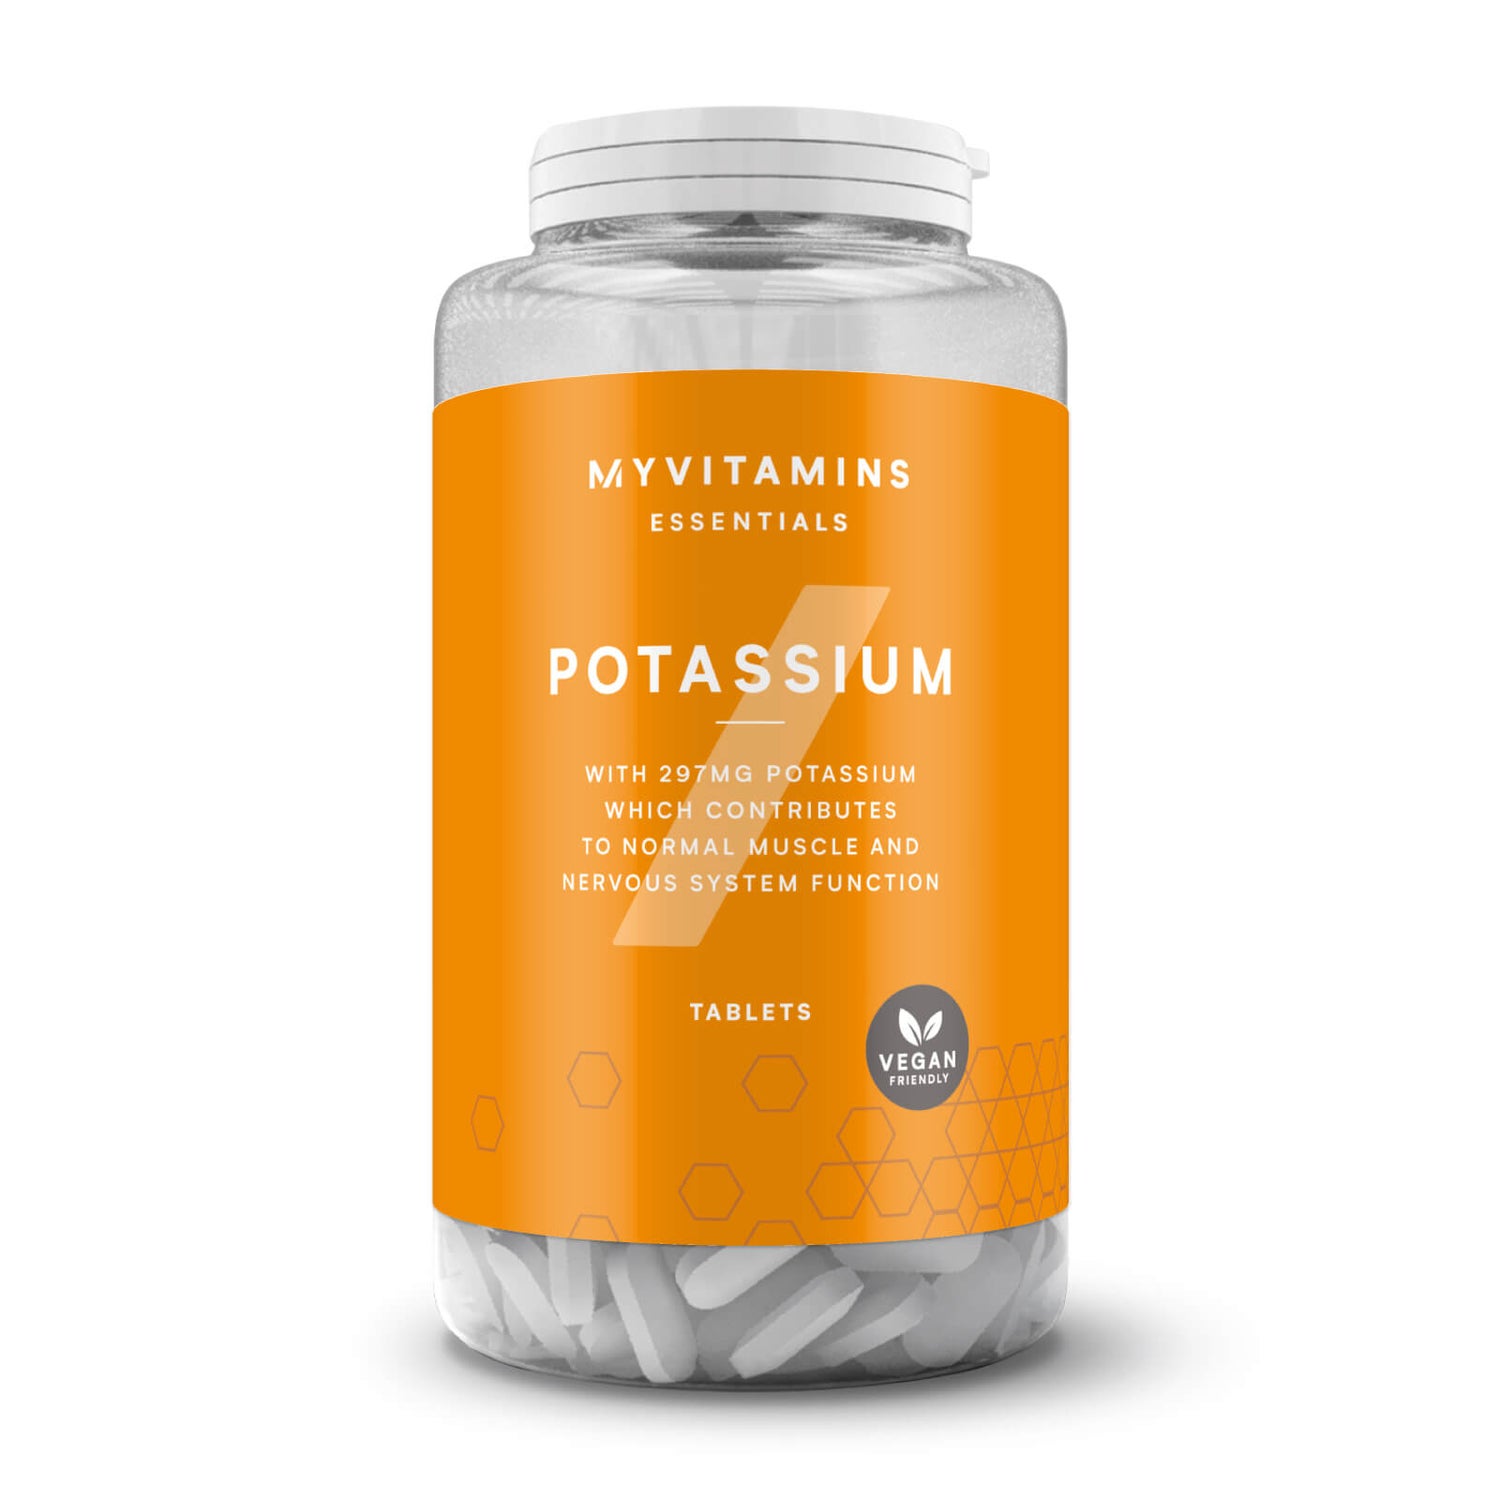 Comprimés - Potassium